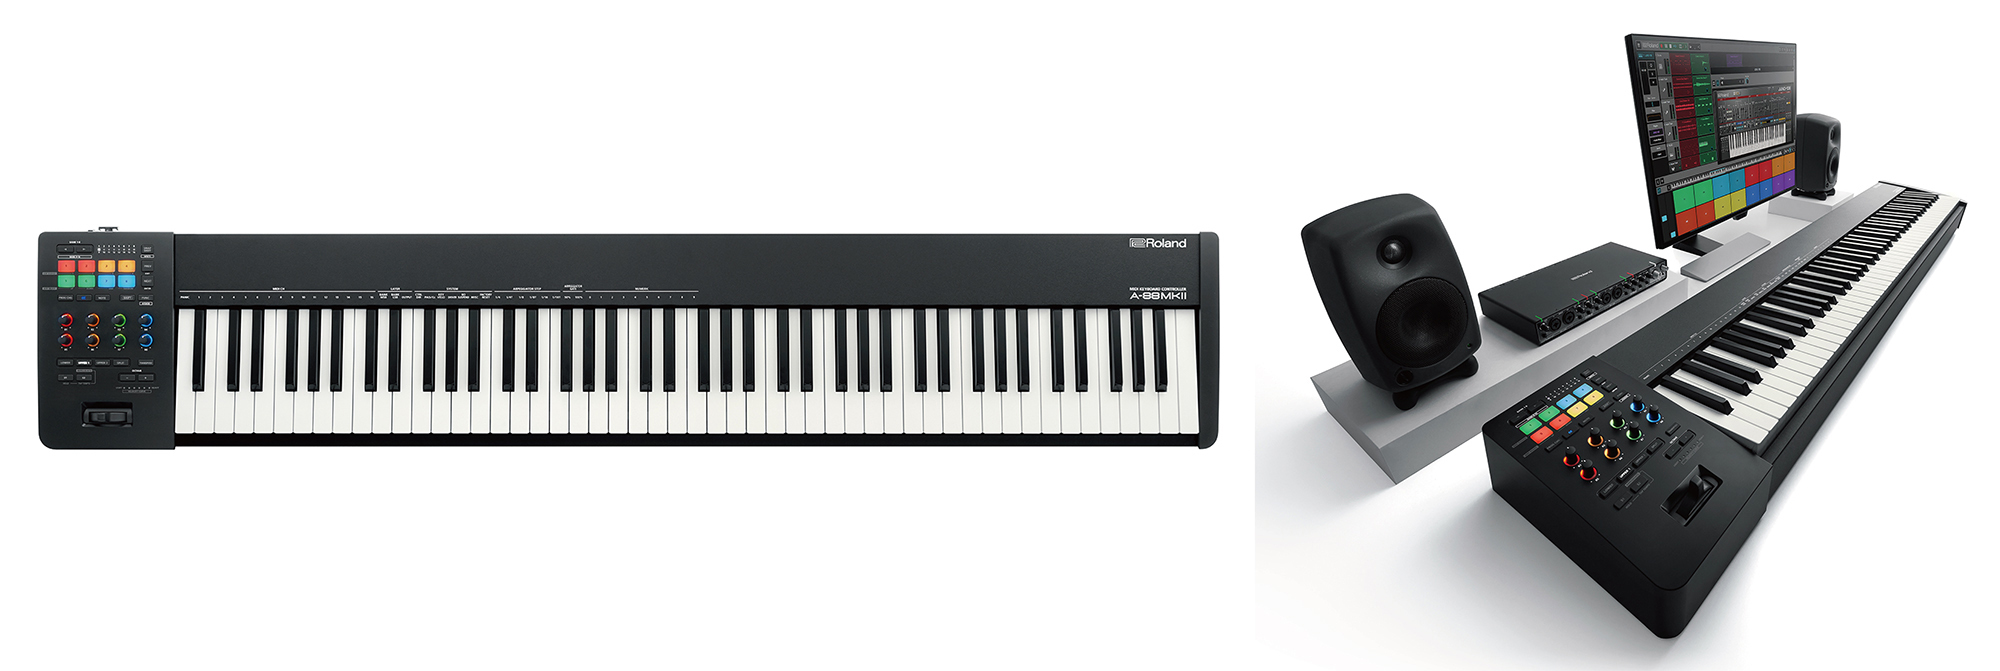 本格的なピアノ鍵盤や多彩な機能で演奏性にこだわった88鍵MIDIキーボード・コントローラーの新モデル発売｜ローランド株式会社のプレスリリース